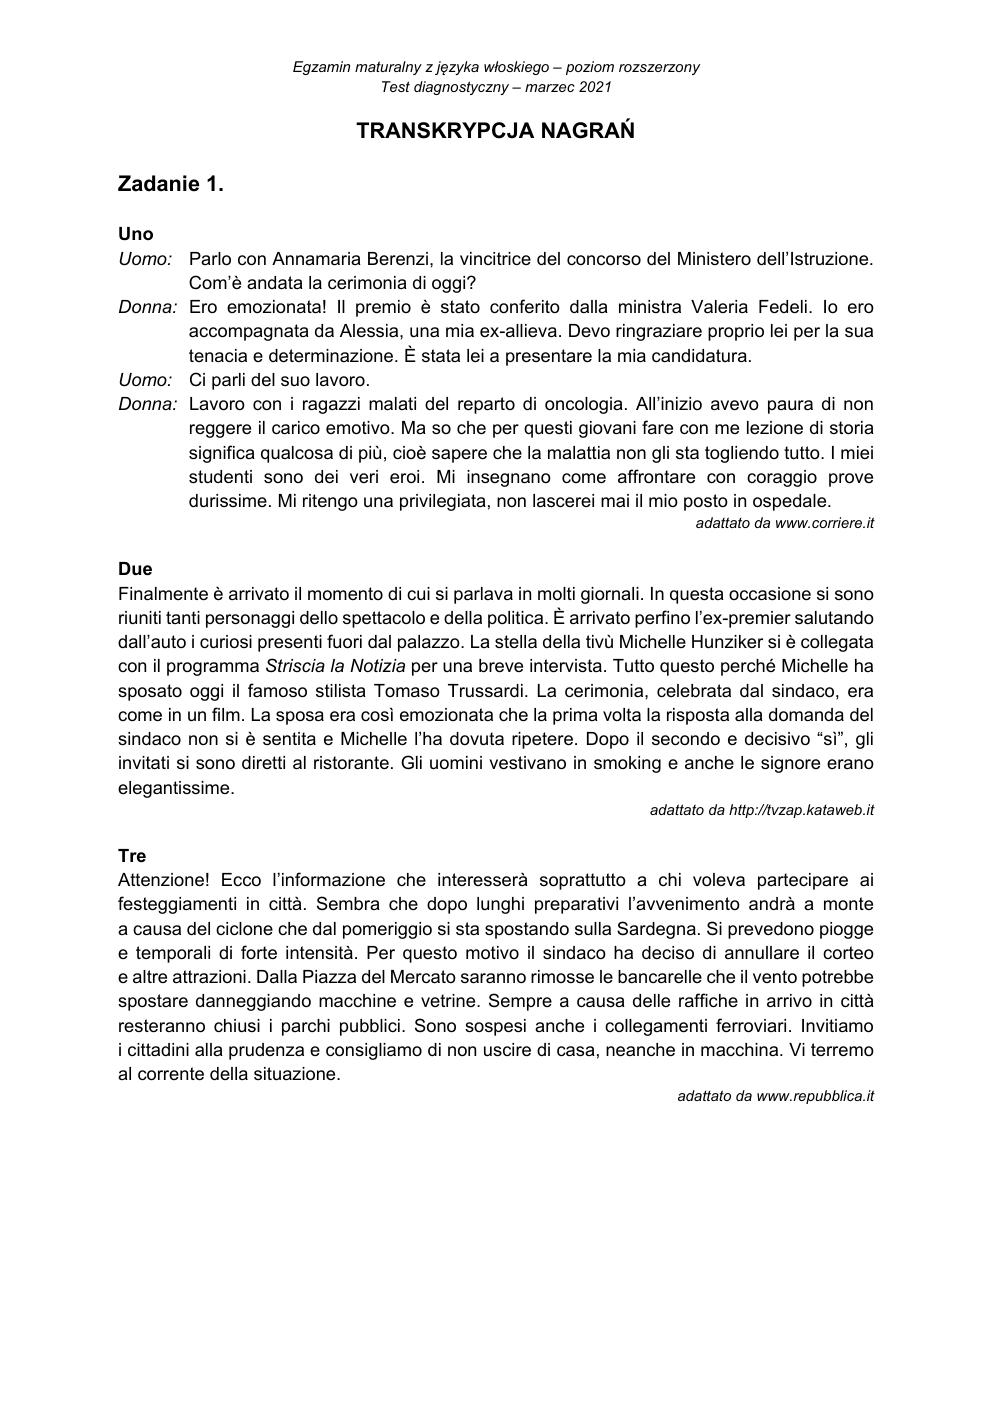 transkrypcja - włoski rozszerzony - matura 2021 próbna-1